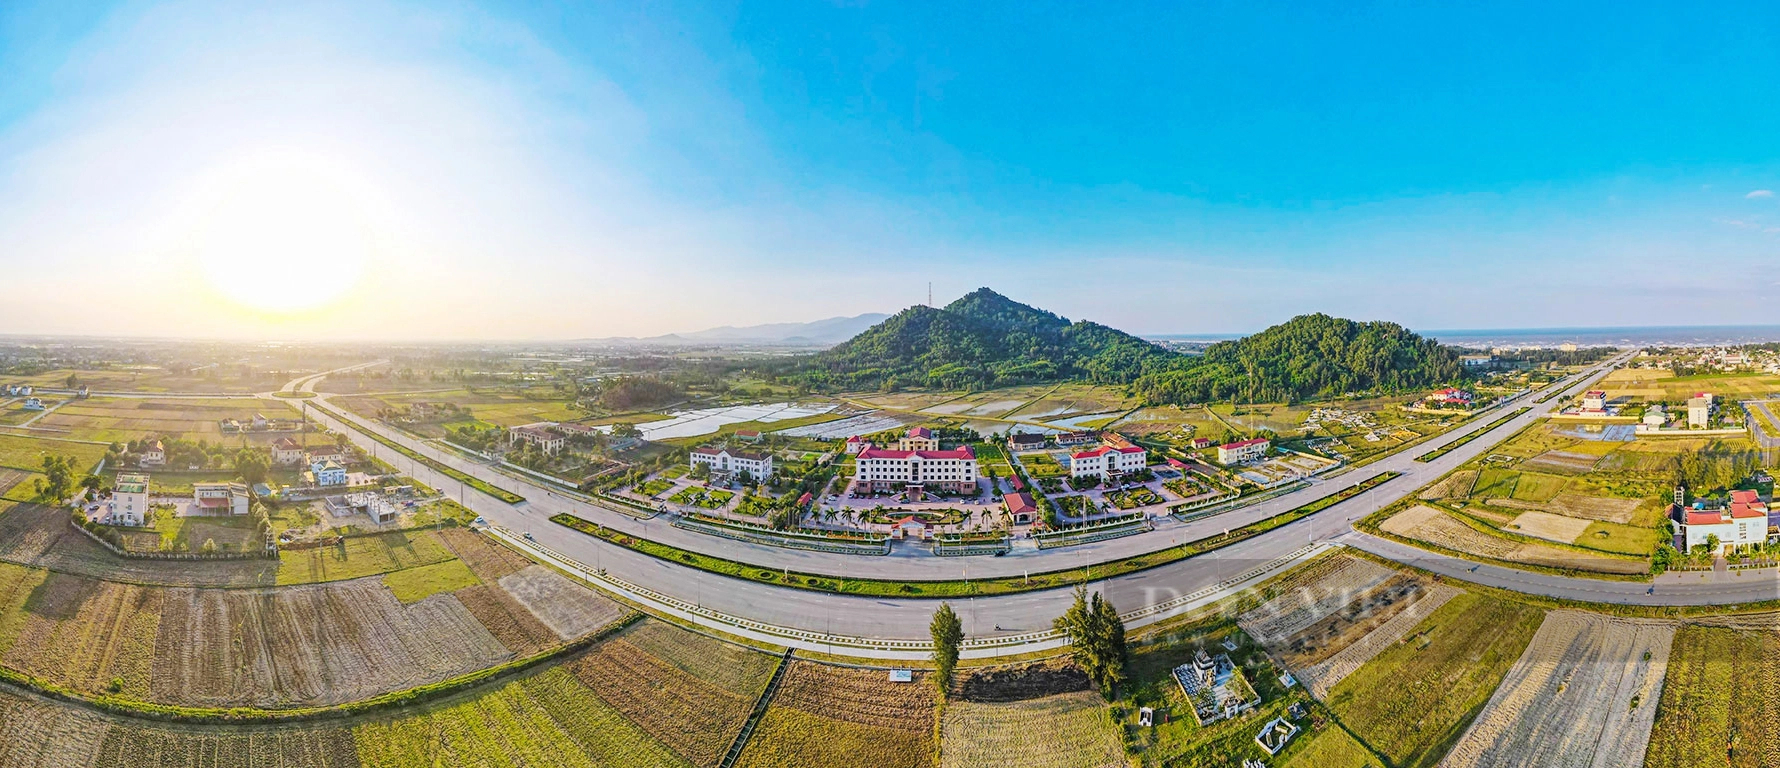 Một huyện của Hà Tĩnh vừa đạt chuẩn nông thôn mới, sẽ bị xóa tên khỏi bản đồ hành chính- Ảnh 1.